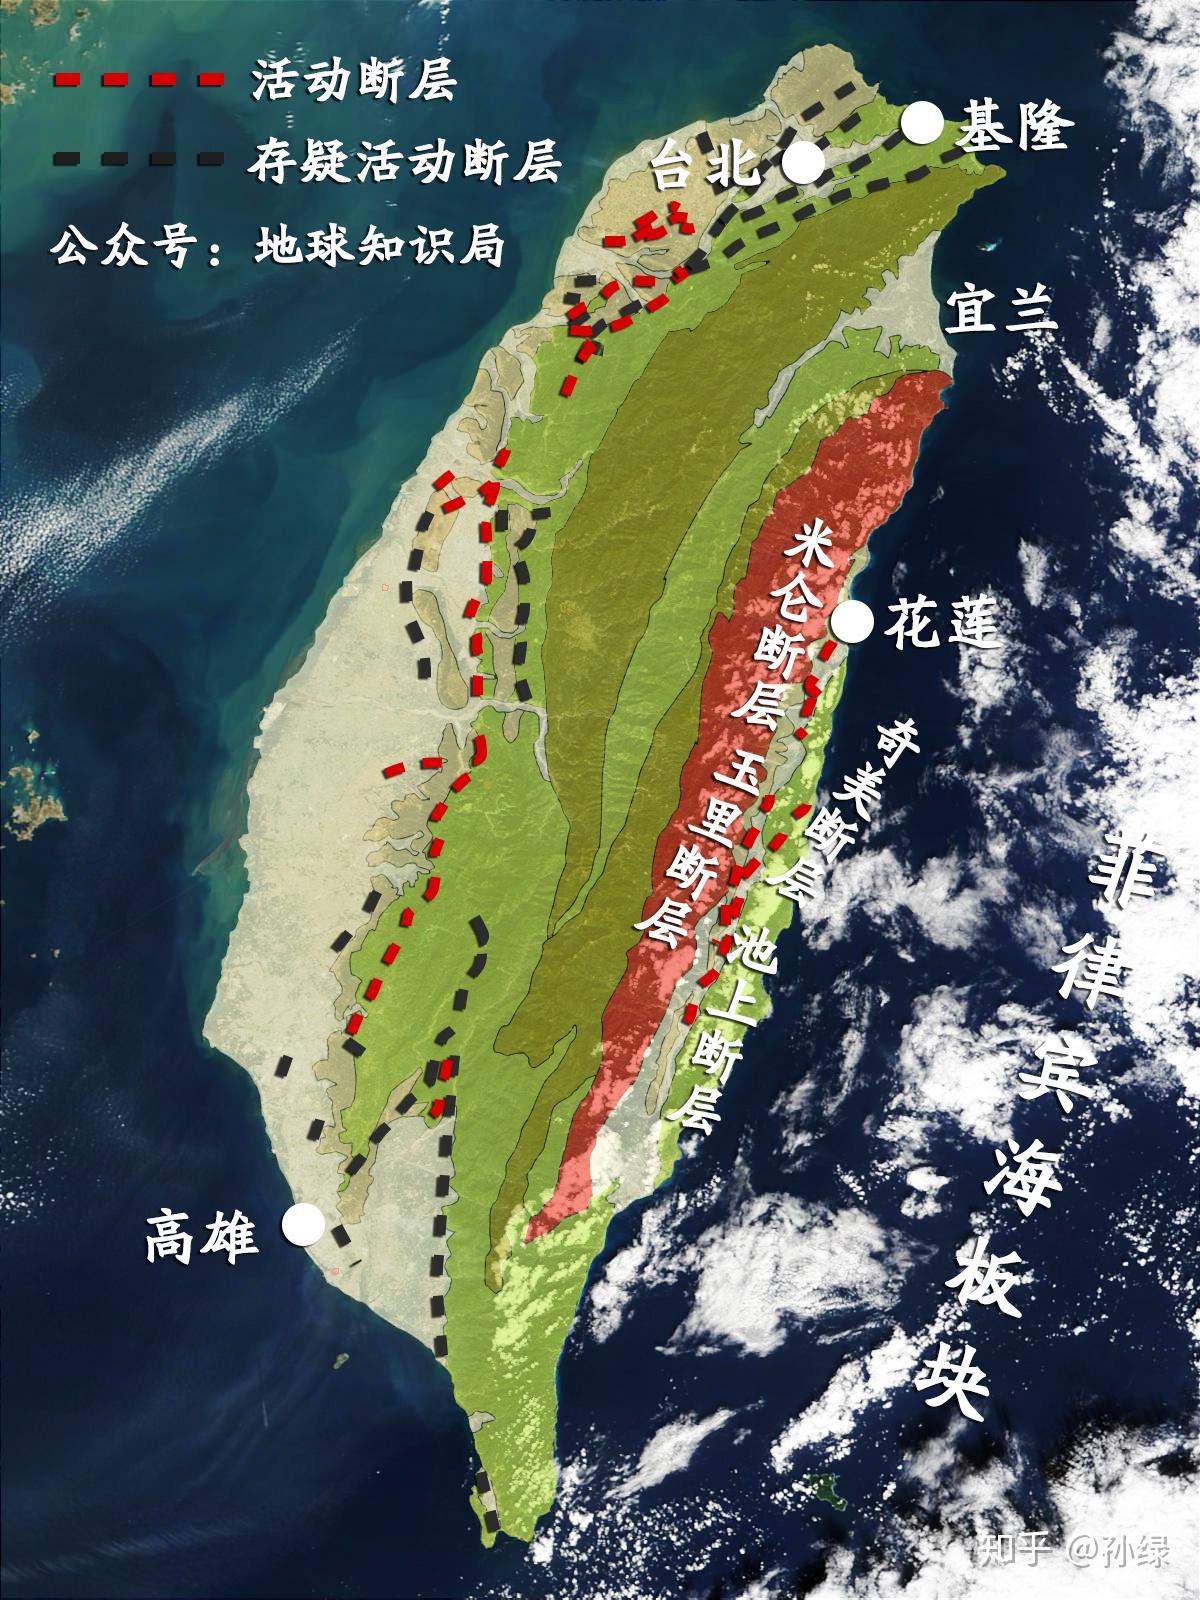 基于经验模型分析2018年2月台湾花莲地震序列特征及其前震的成因机制